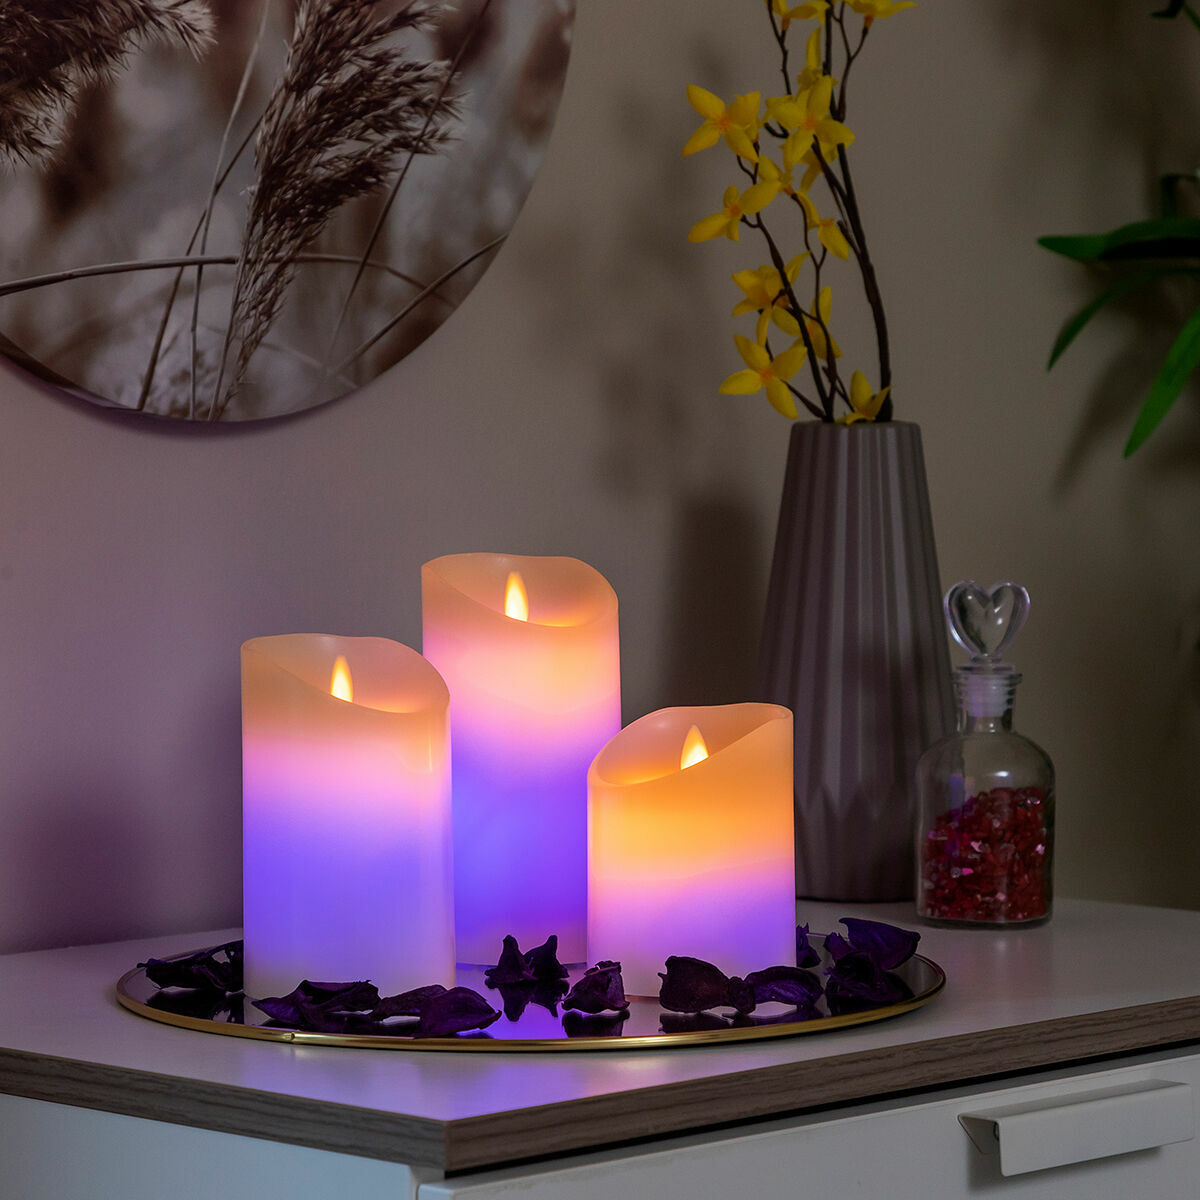 Kaufe Mehrfarbige LED-Kerzen Flammeneffekt mit Fernbedienung Lendles InnovaGoods 3 Stück bei AWK Flagship um € 35.00